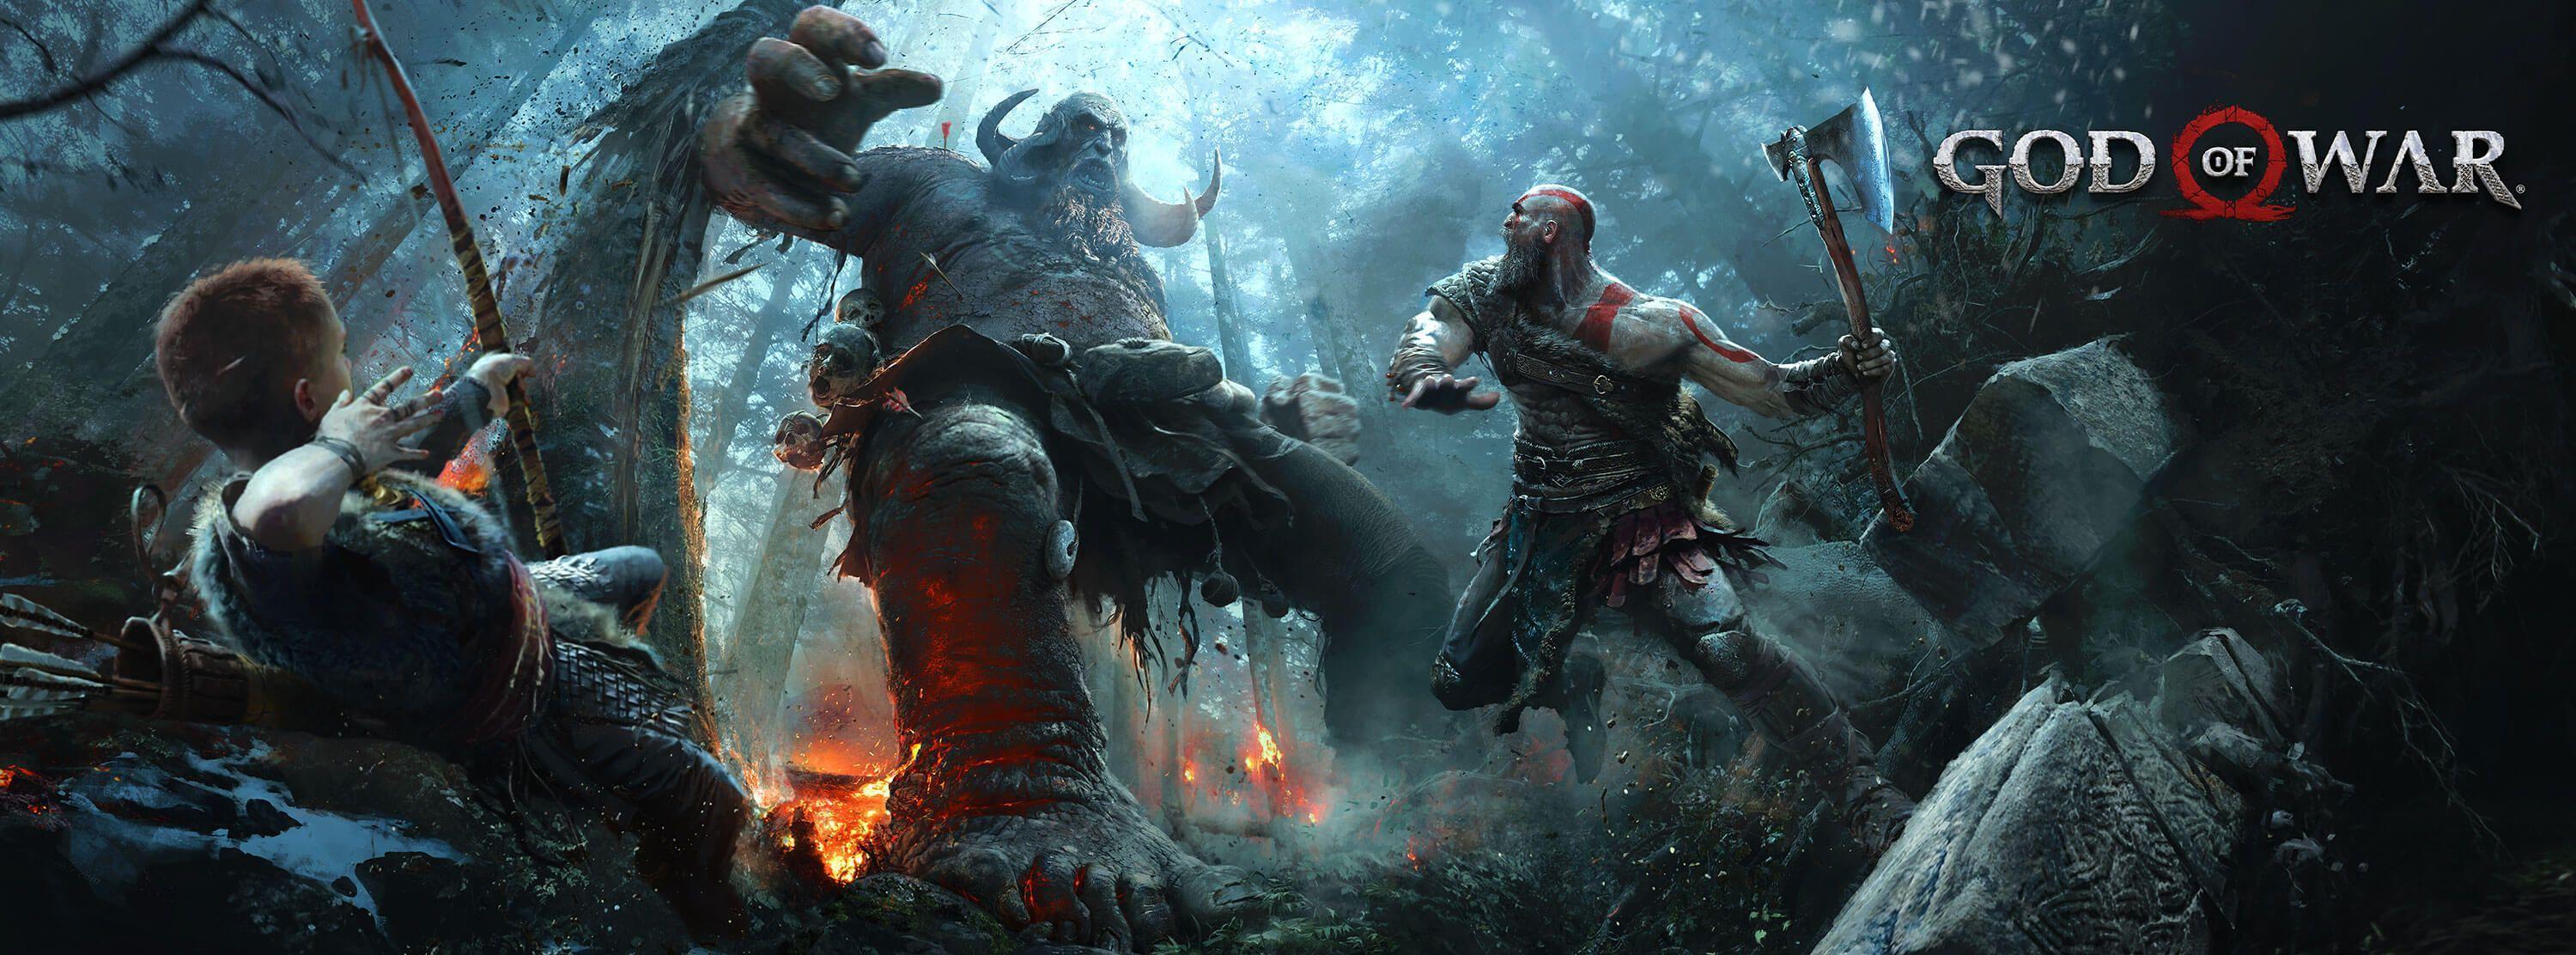 Kratos (God Of War) HD Wallpaper